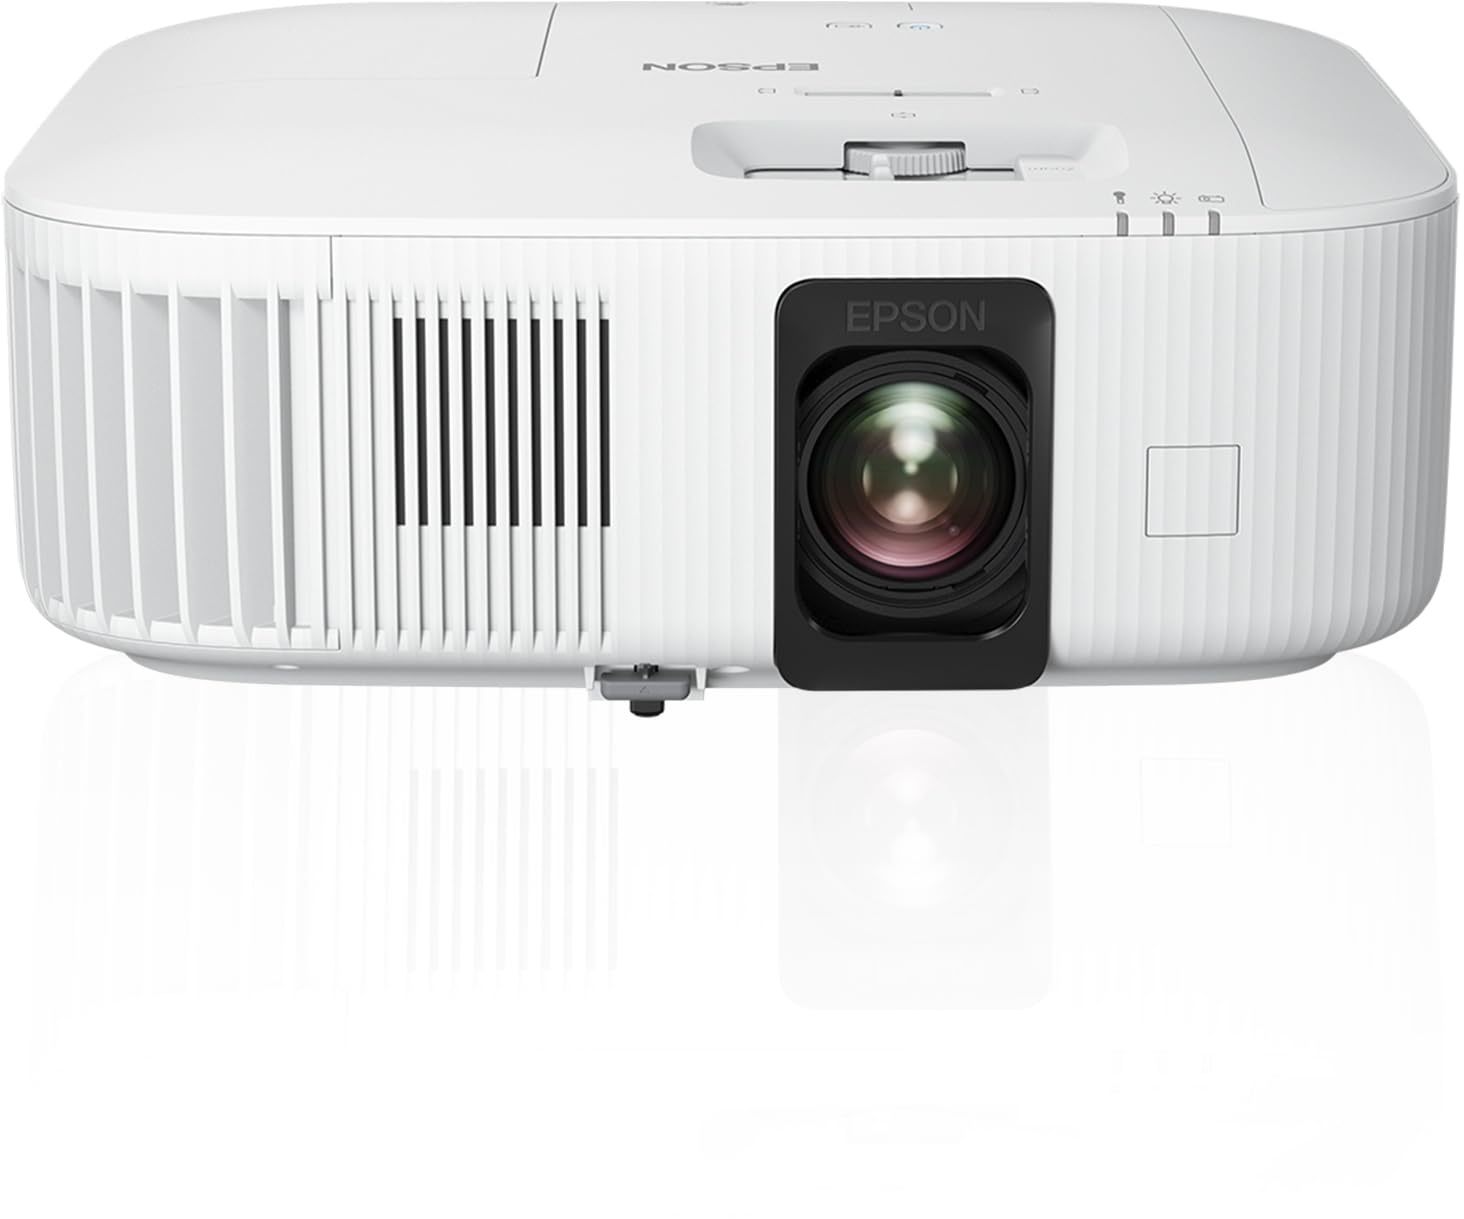 Epson EH-TW6150 3LCD-Projektor (PRO-UHD 4K 16:9, 2.800 Lumen Weiß- und Farbhelligkeit, Kontrast 35.000:1 bis zu 500 Zoll/12,7 m, Lens-Shift, Trapezkorrektur, HDMI)